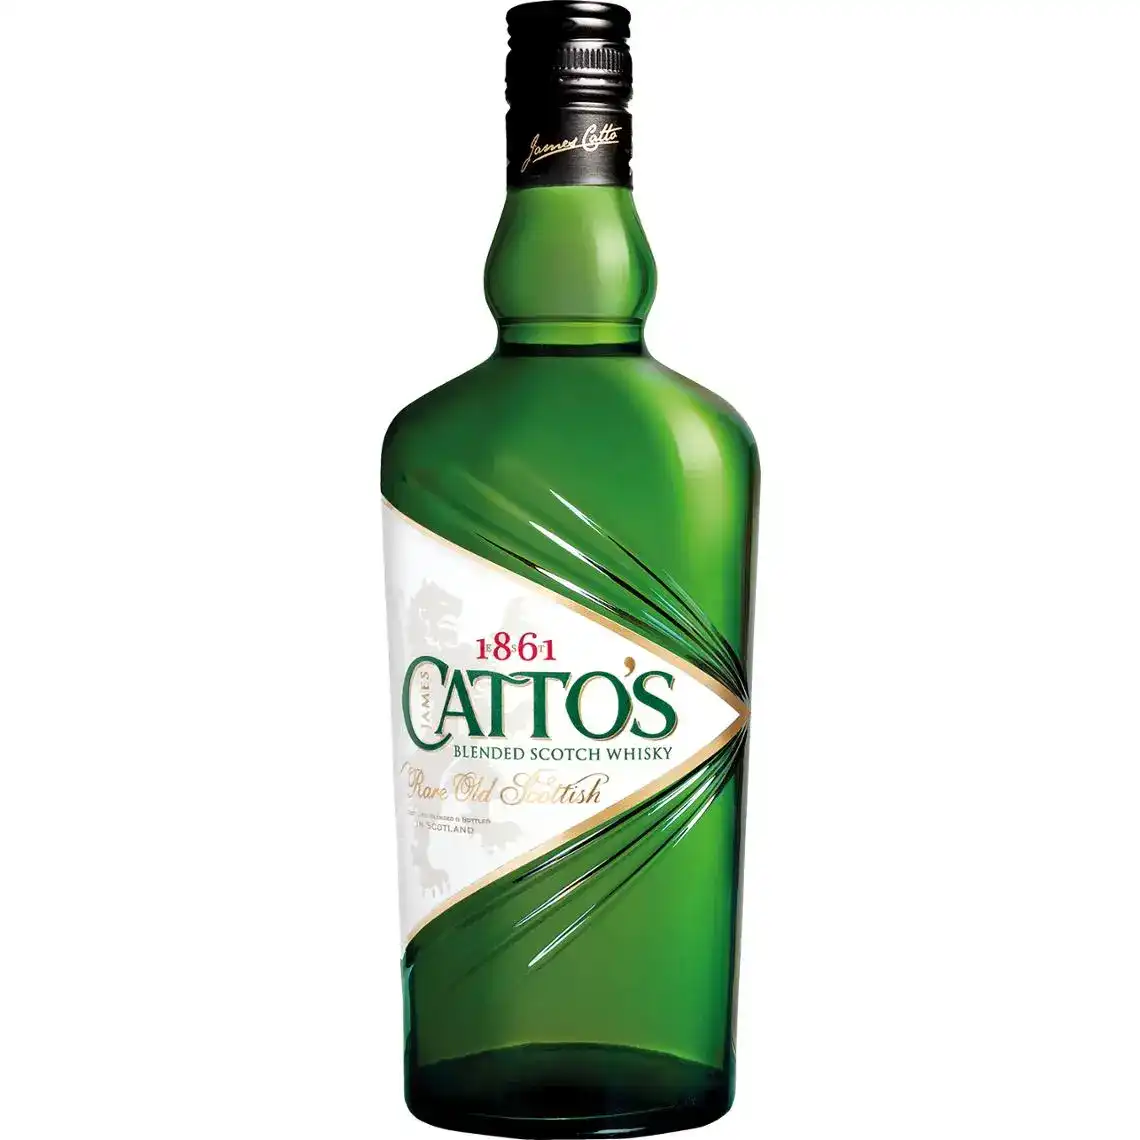 Виски Cattos 40% 0.75 л